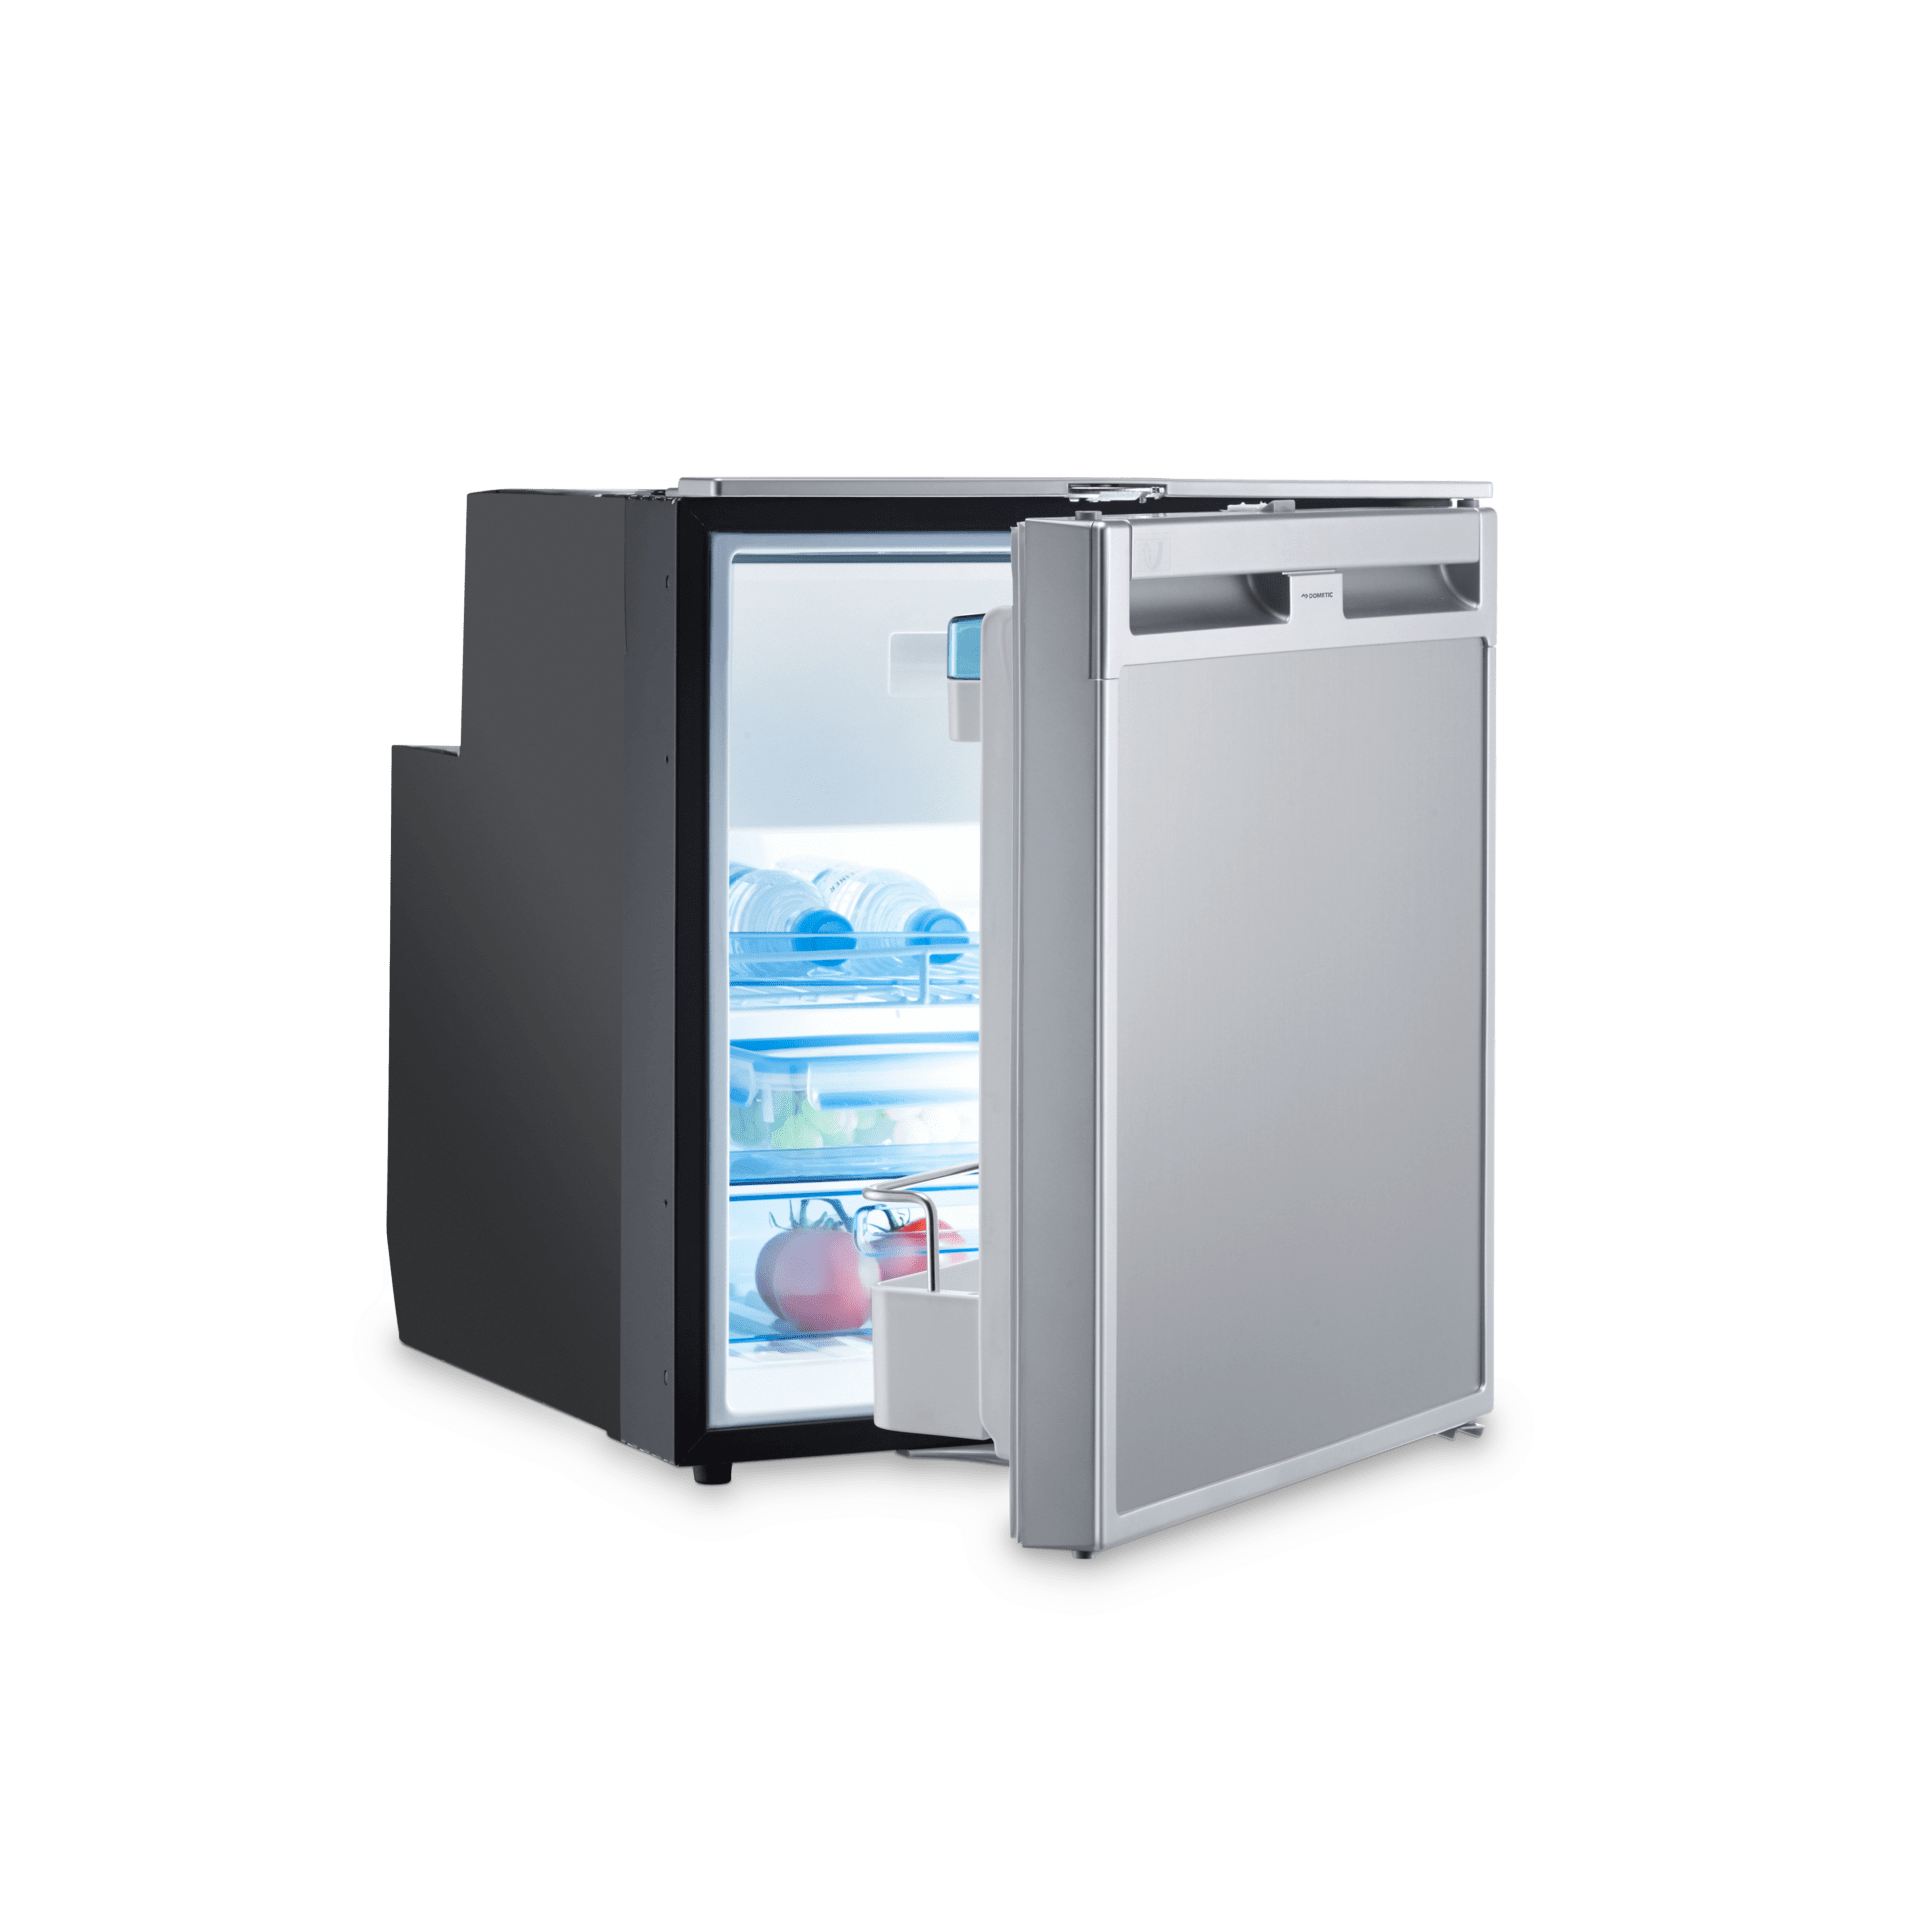 Réfrigérateur camping DOMETIC - RM8400 - Privadis